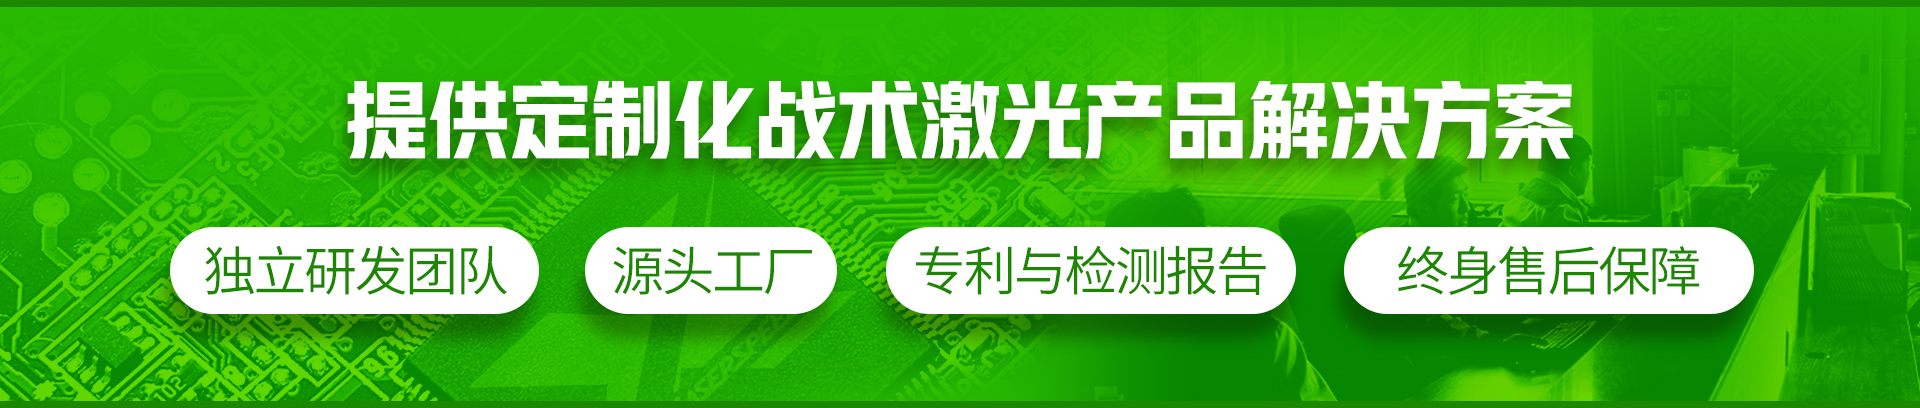 关于当前产品6399彩世界官方网站·(中国)官方网站的成功案例等相关图片